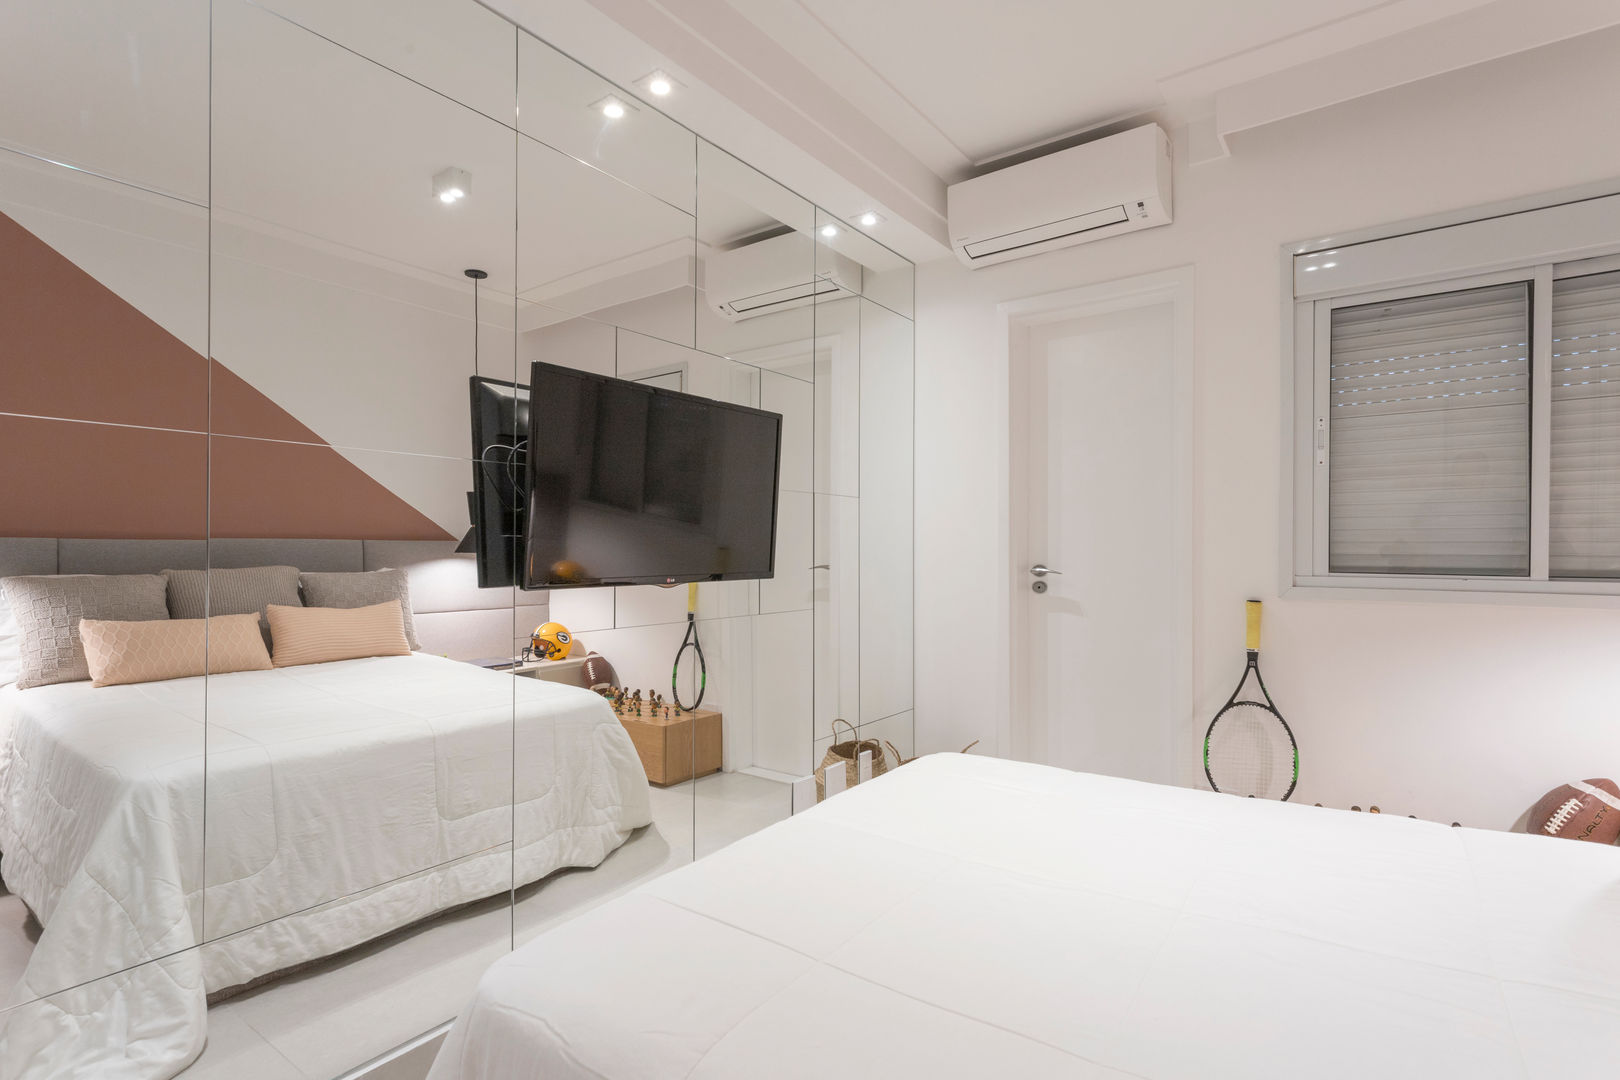 Apartamento moderno e cheio de personalidade para casal jovem, Studio Elã Studio Elã Modern style bedroom